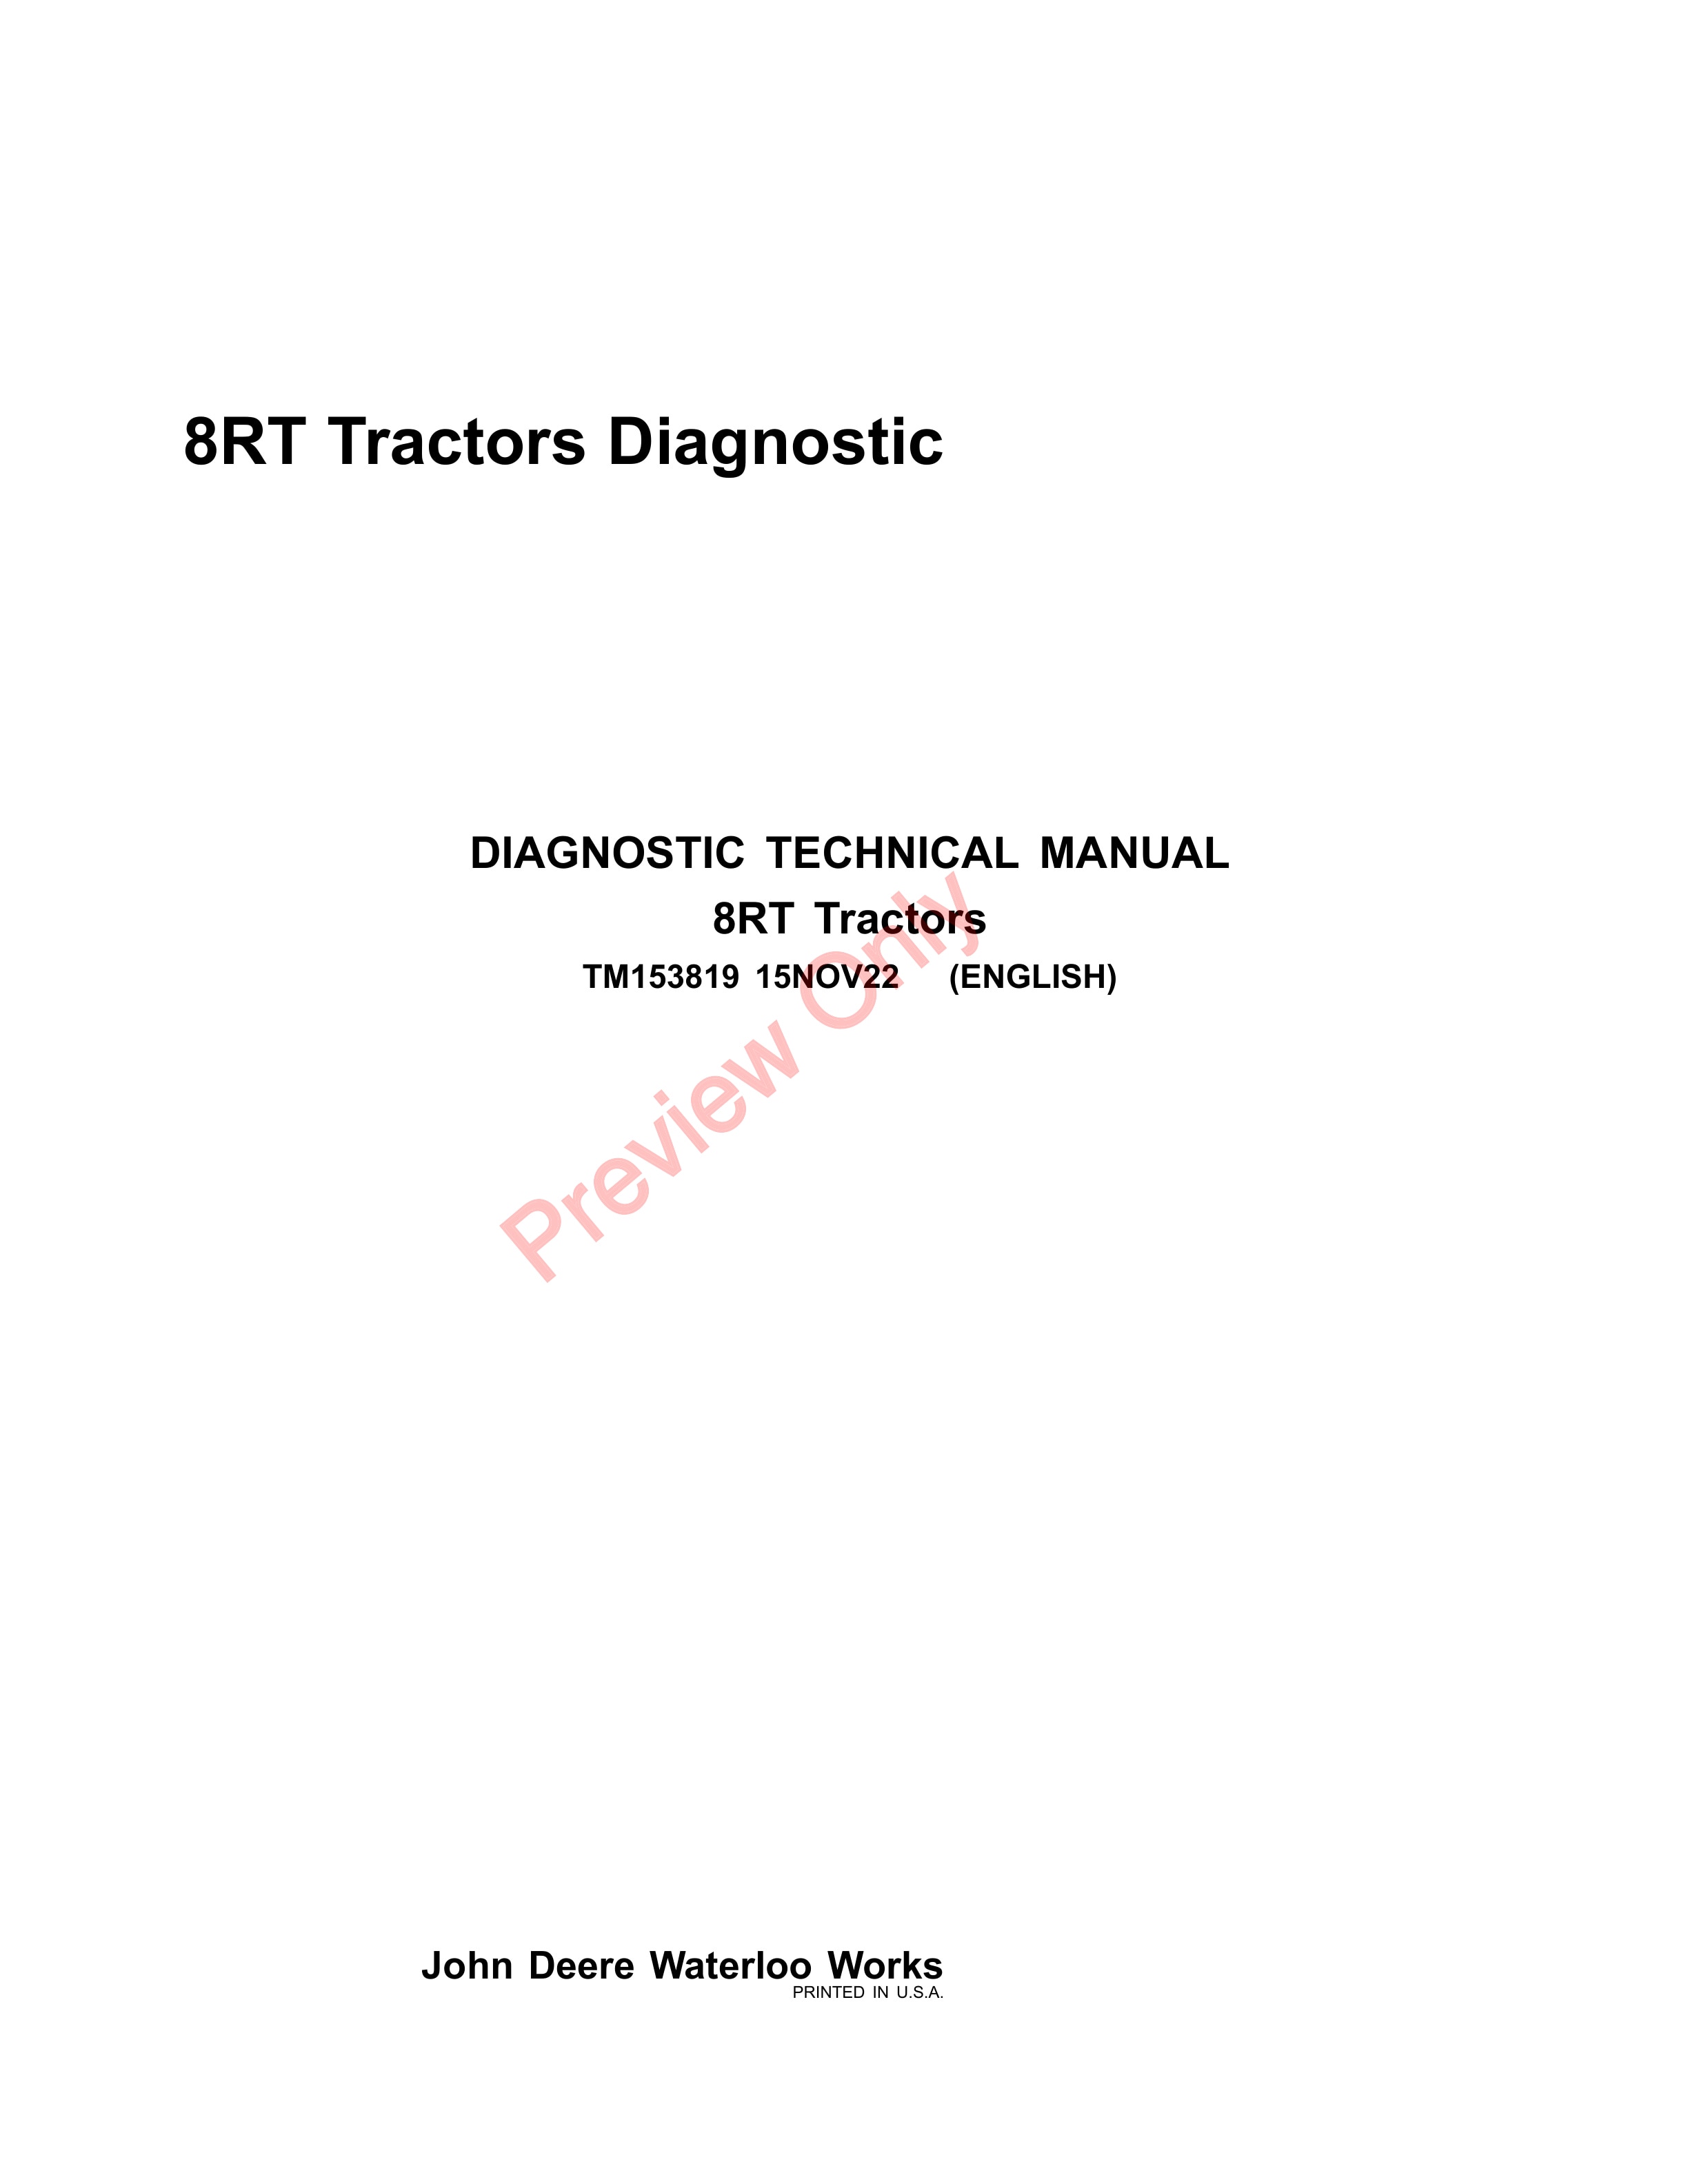 John Deere 8RT Tractors Diagnostic Technical Manual TM153819 15NOV22-1